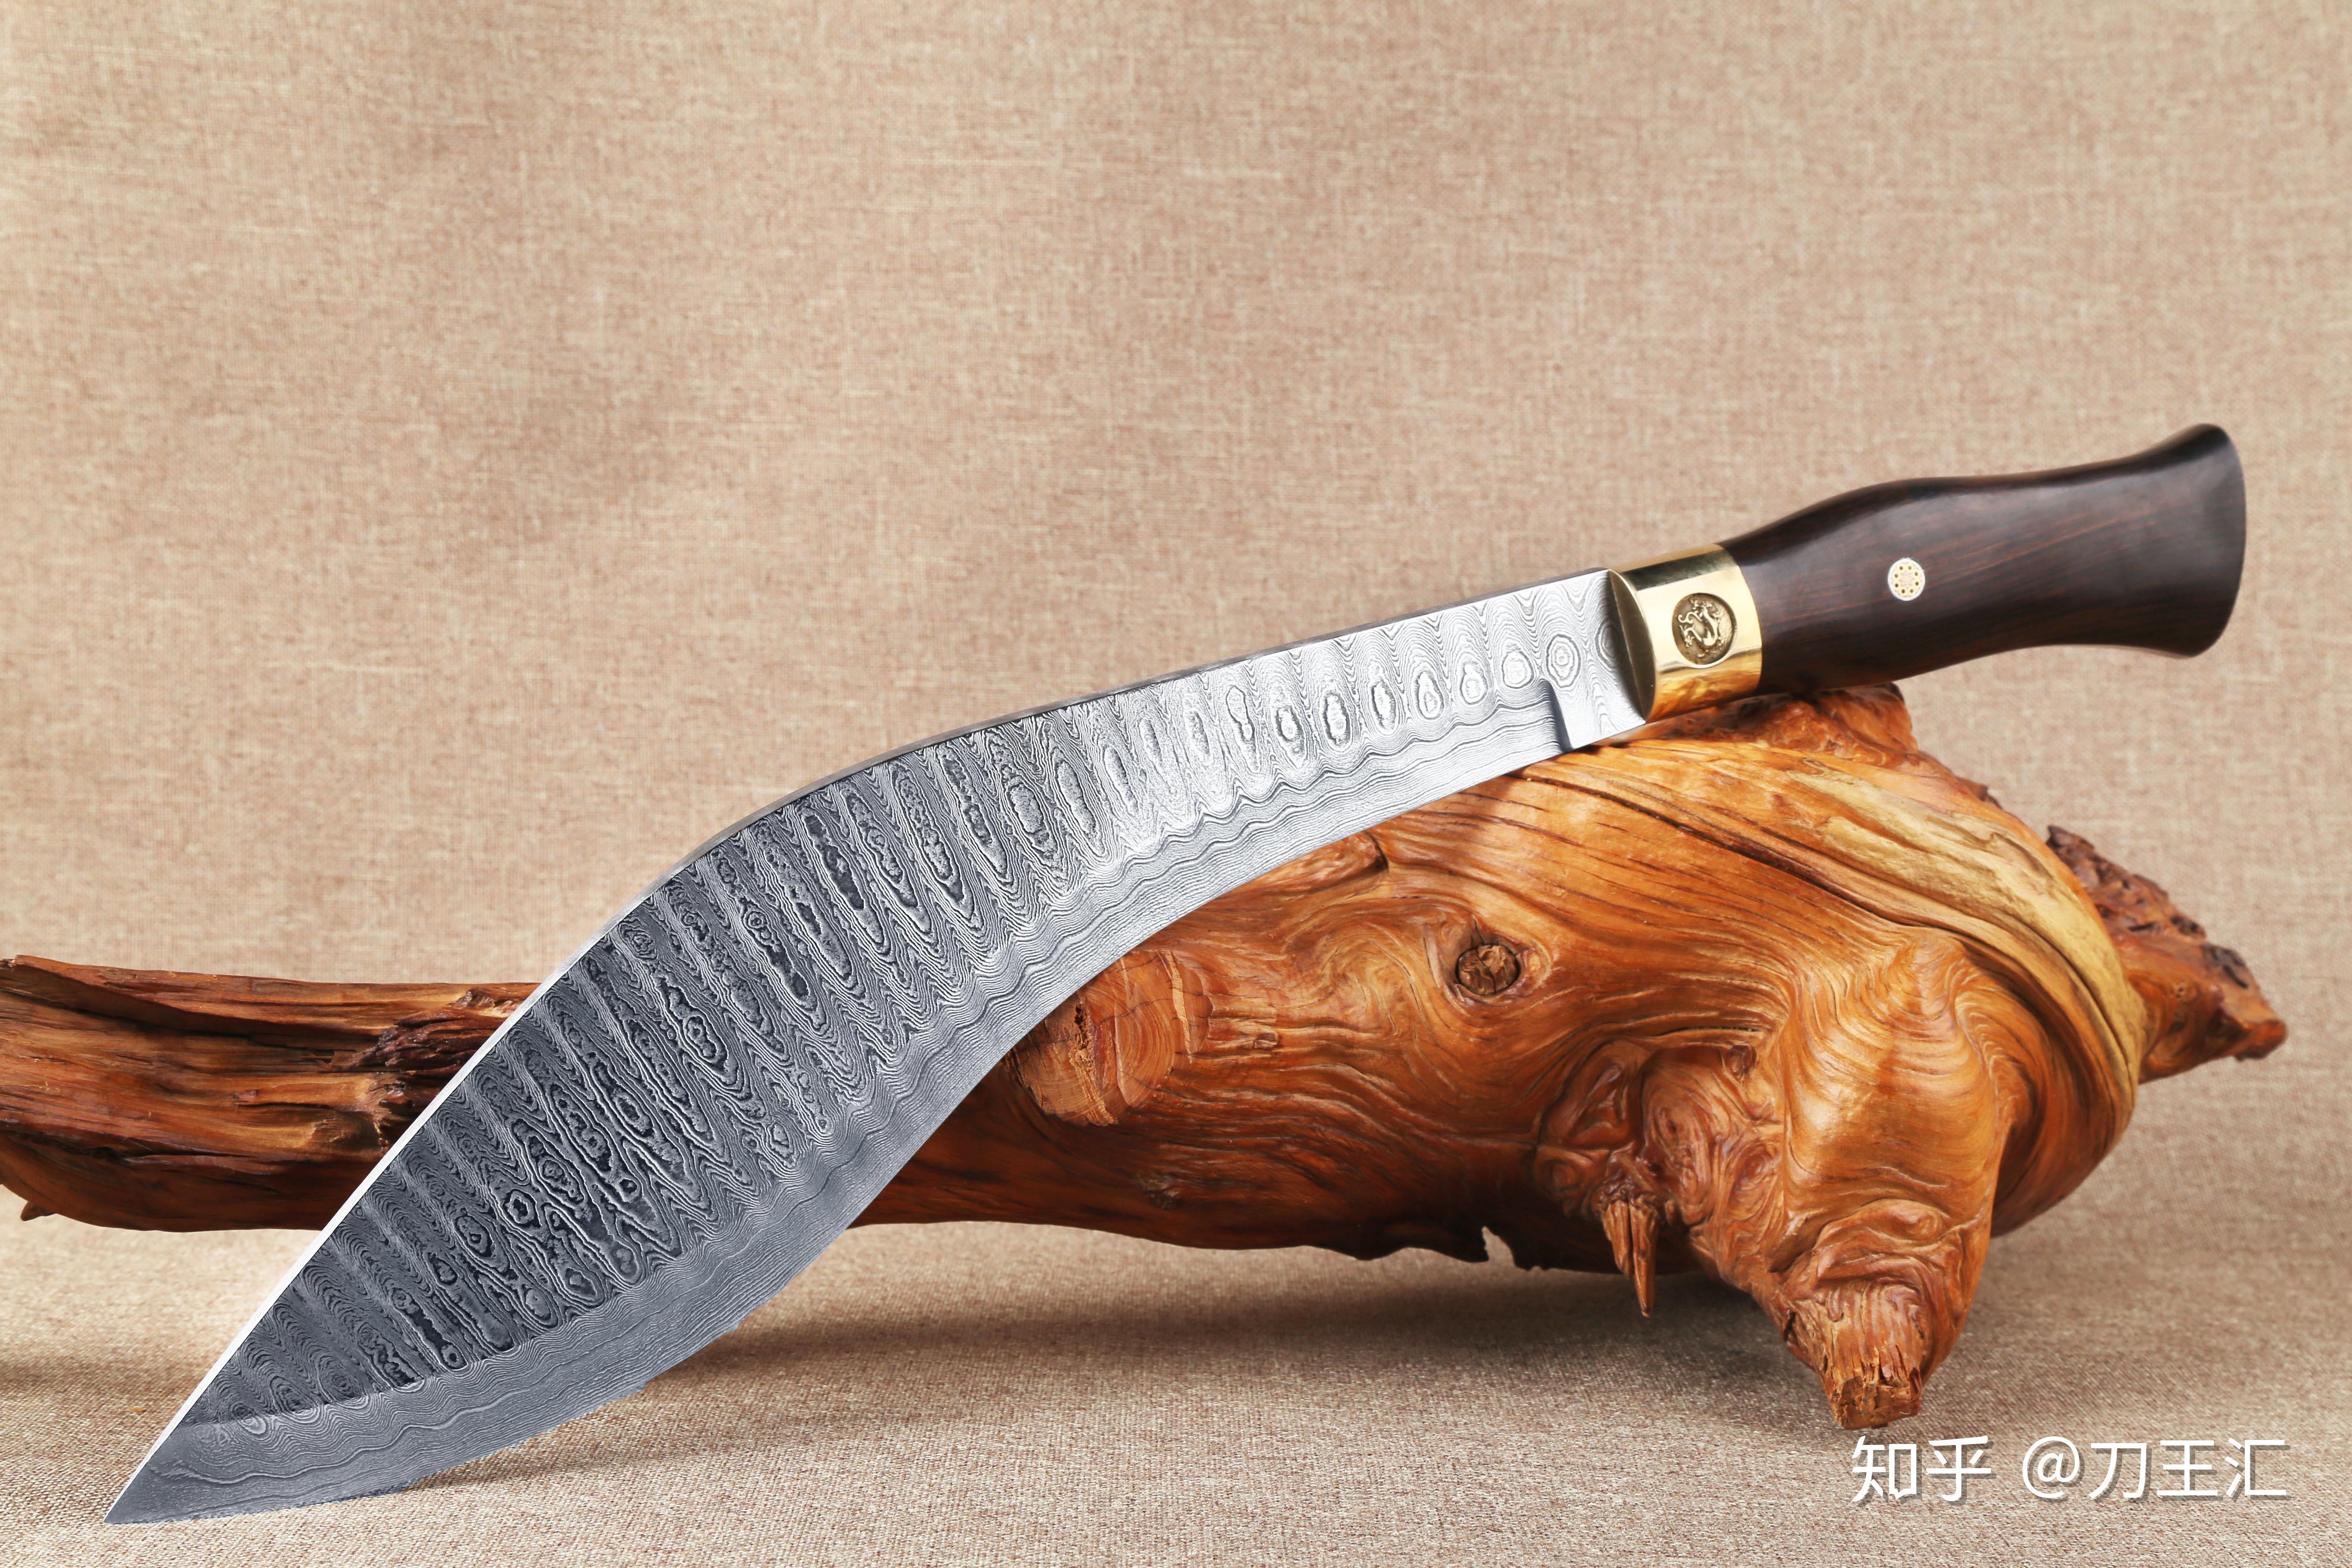 刀中王者:大砍刀,世界上最实用也最凶悍的刀具